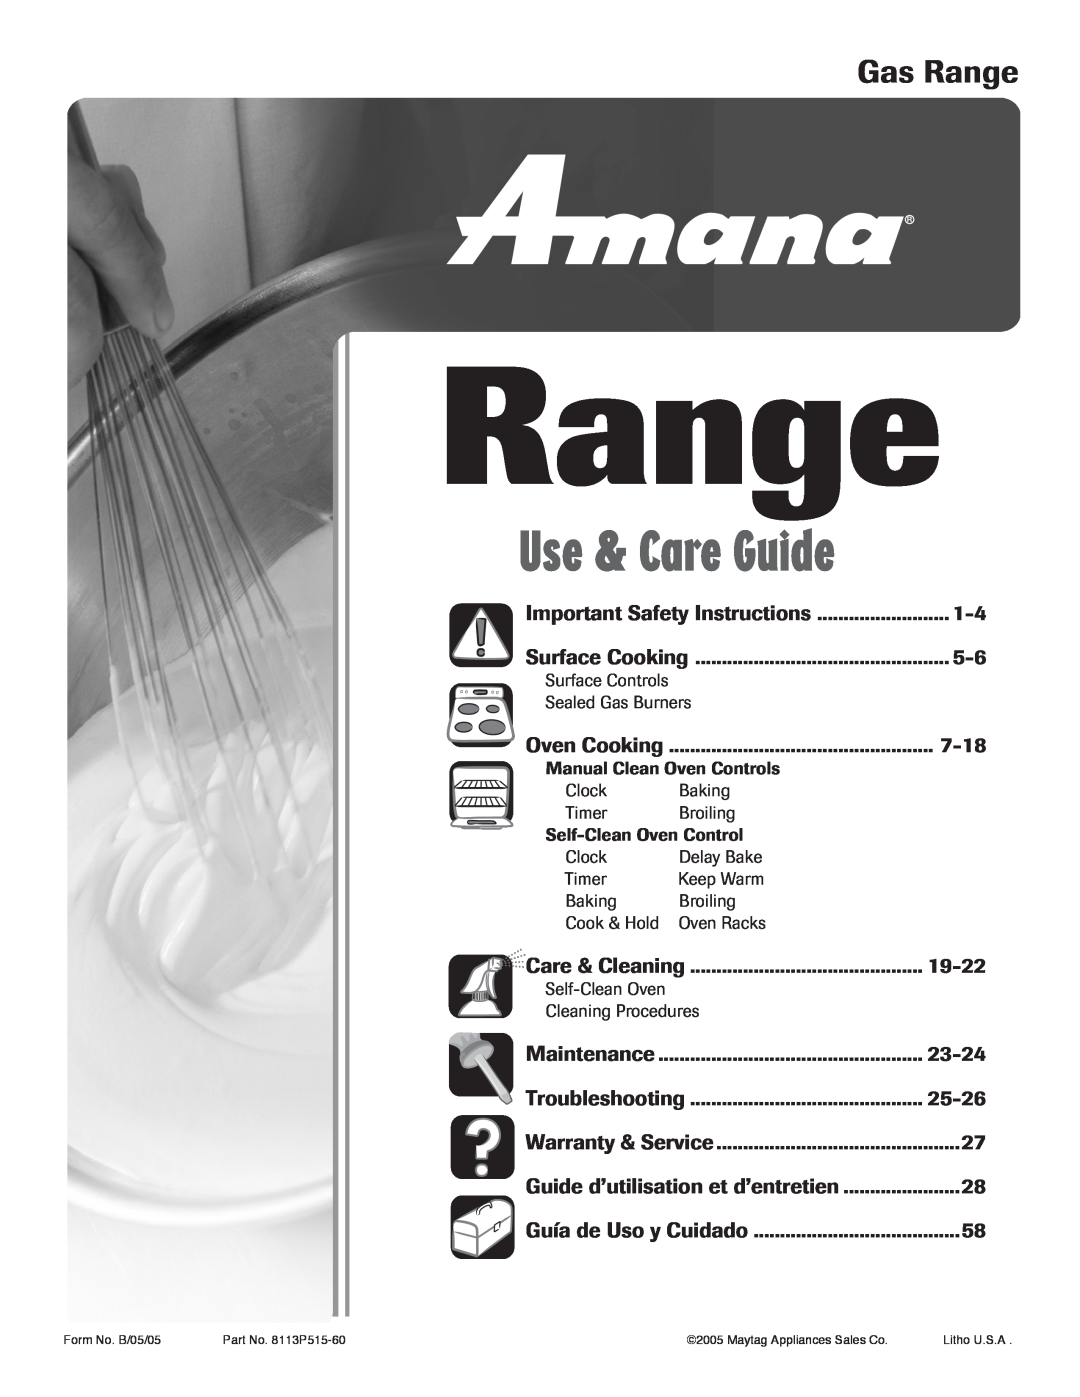 Amana 8113P515-60 manual Gas Range, Use & Care Guide 